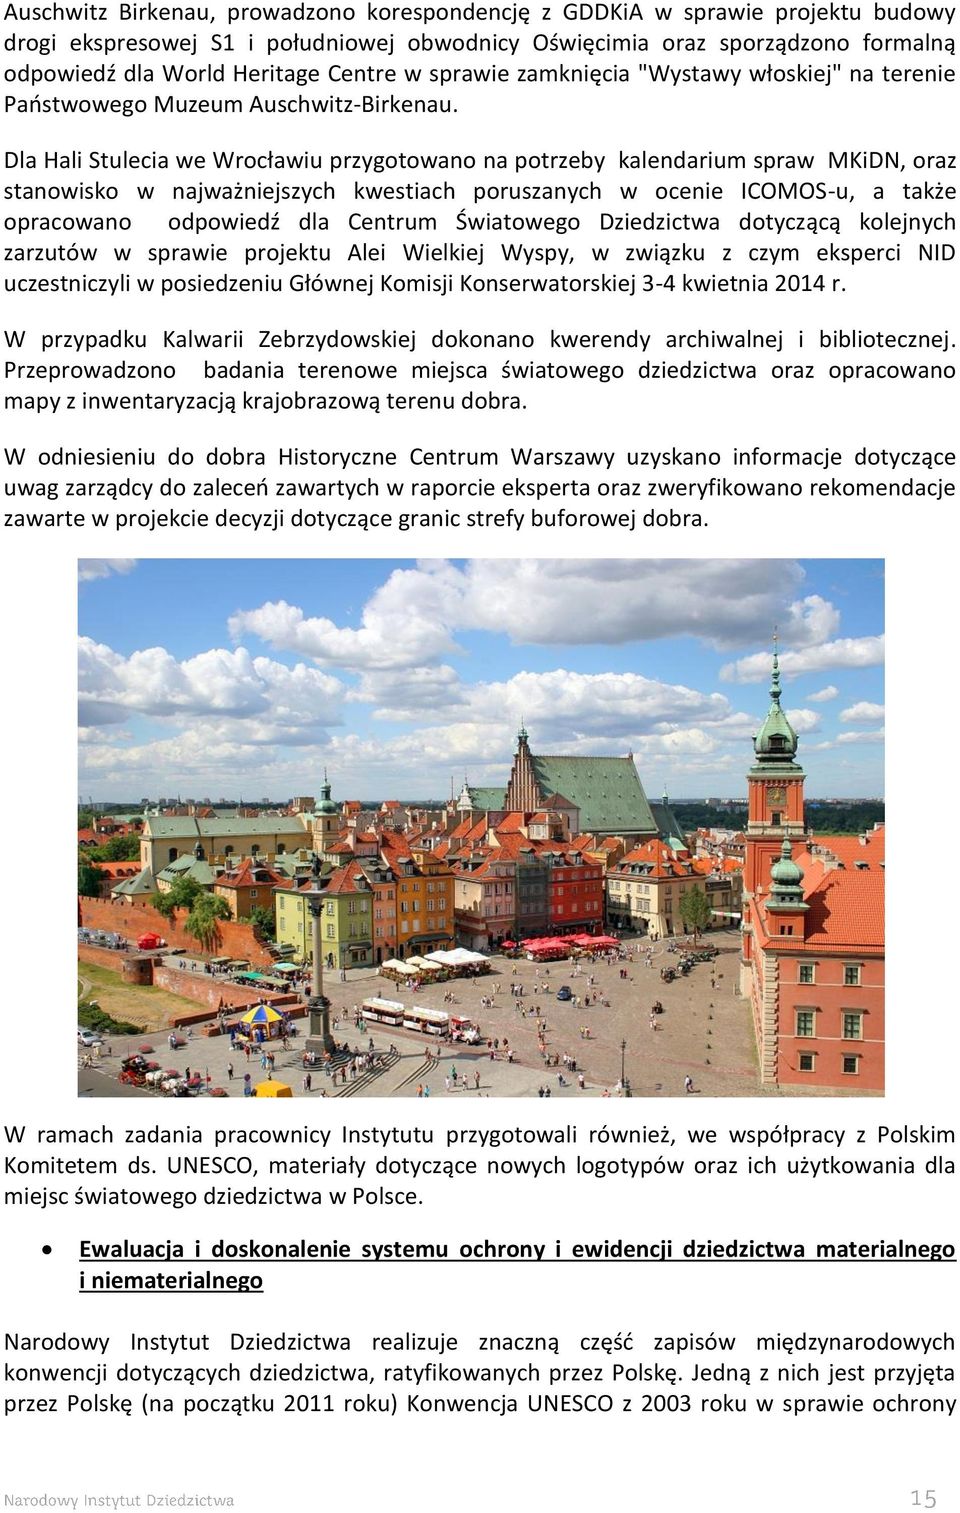 Dla Hali Stulecia we Wrocławiu przygotowano na potrzeby kalendarium spraw MKiDN, oraz stanowisko w najważniejszych kwestiach poruszanych w ocenie ICOMOS-u, a także opracowano odpowiedź dla Centrum